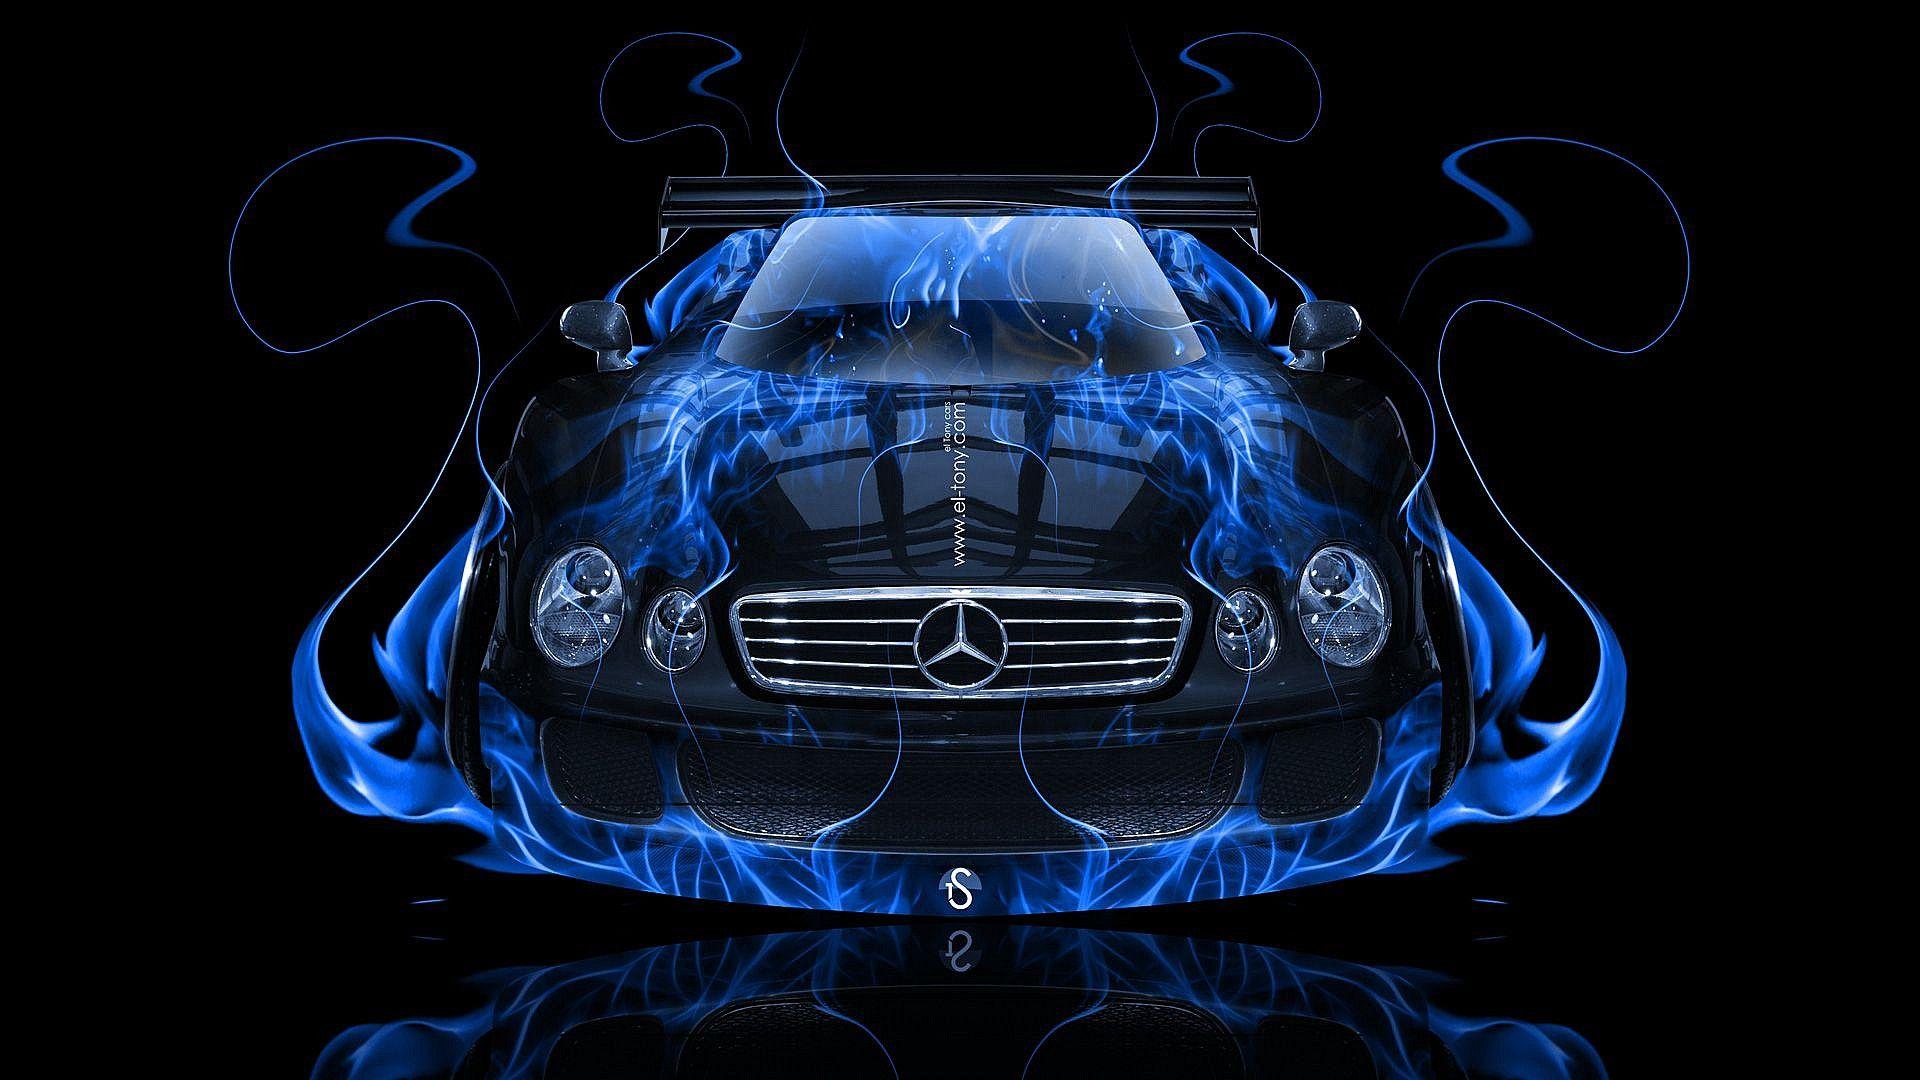 Benz Clk Gtr Frontup Blue Fire Abstract Car 2014 Art HD Wallpaper